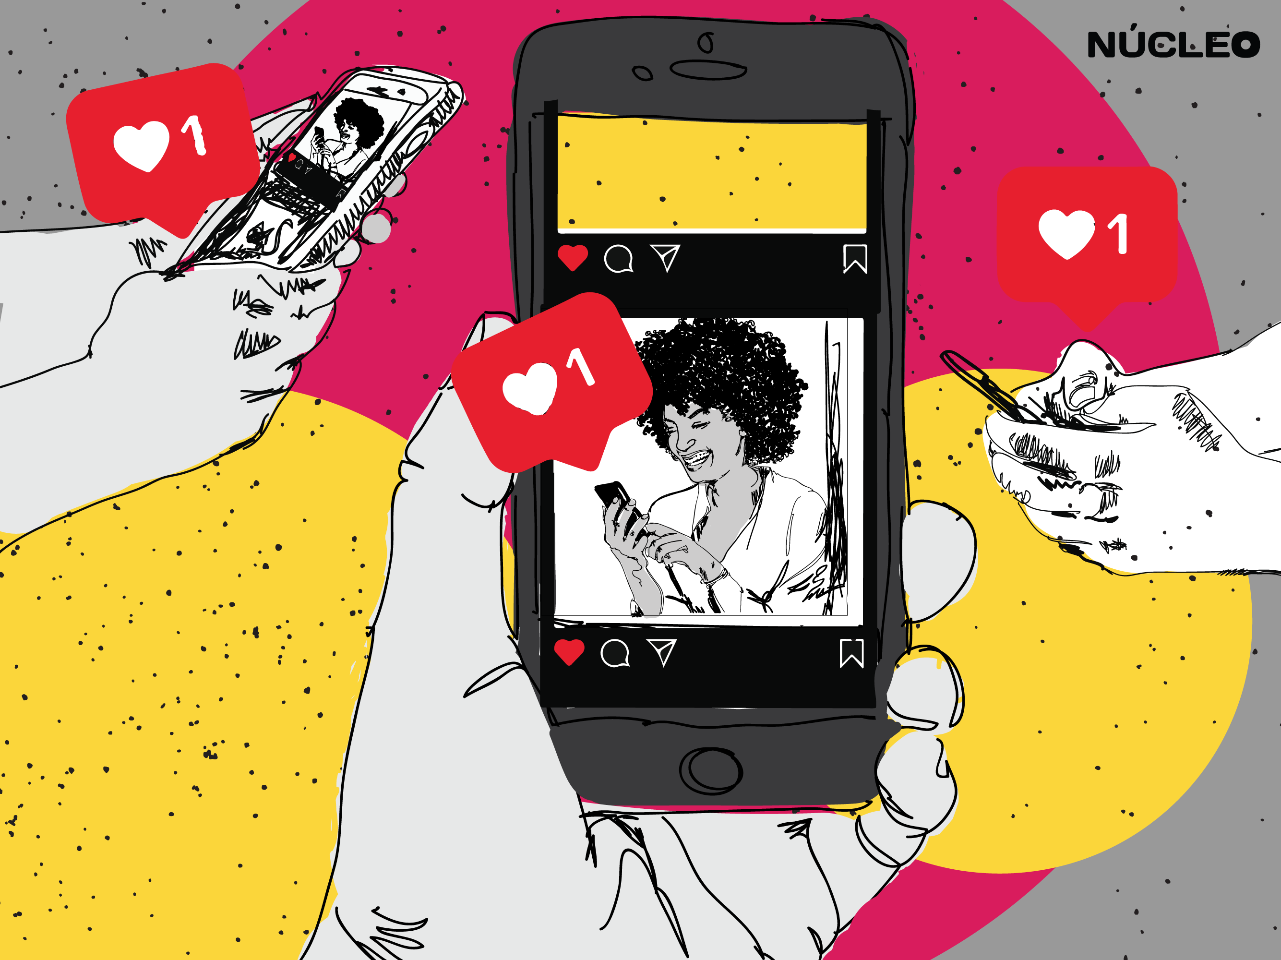 Instagram escolhe Brasil para testar nova versão do “Melhores amigos” nos stories